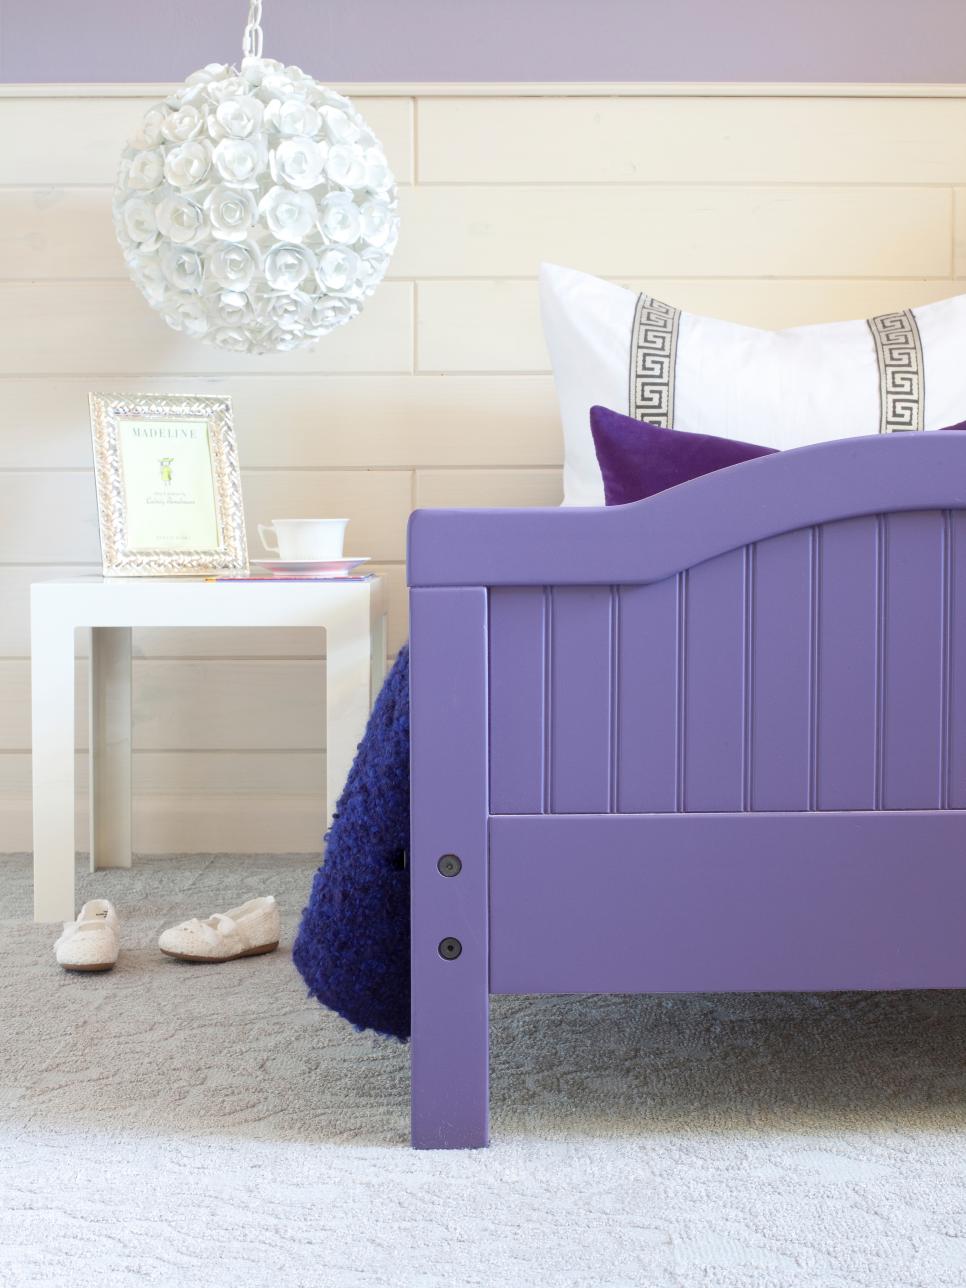 Purple Kids' Room With Round Rose Chandelier | HGTV